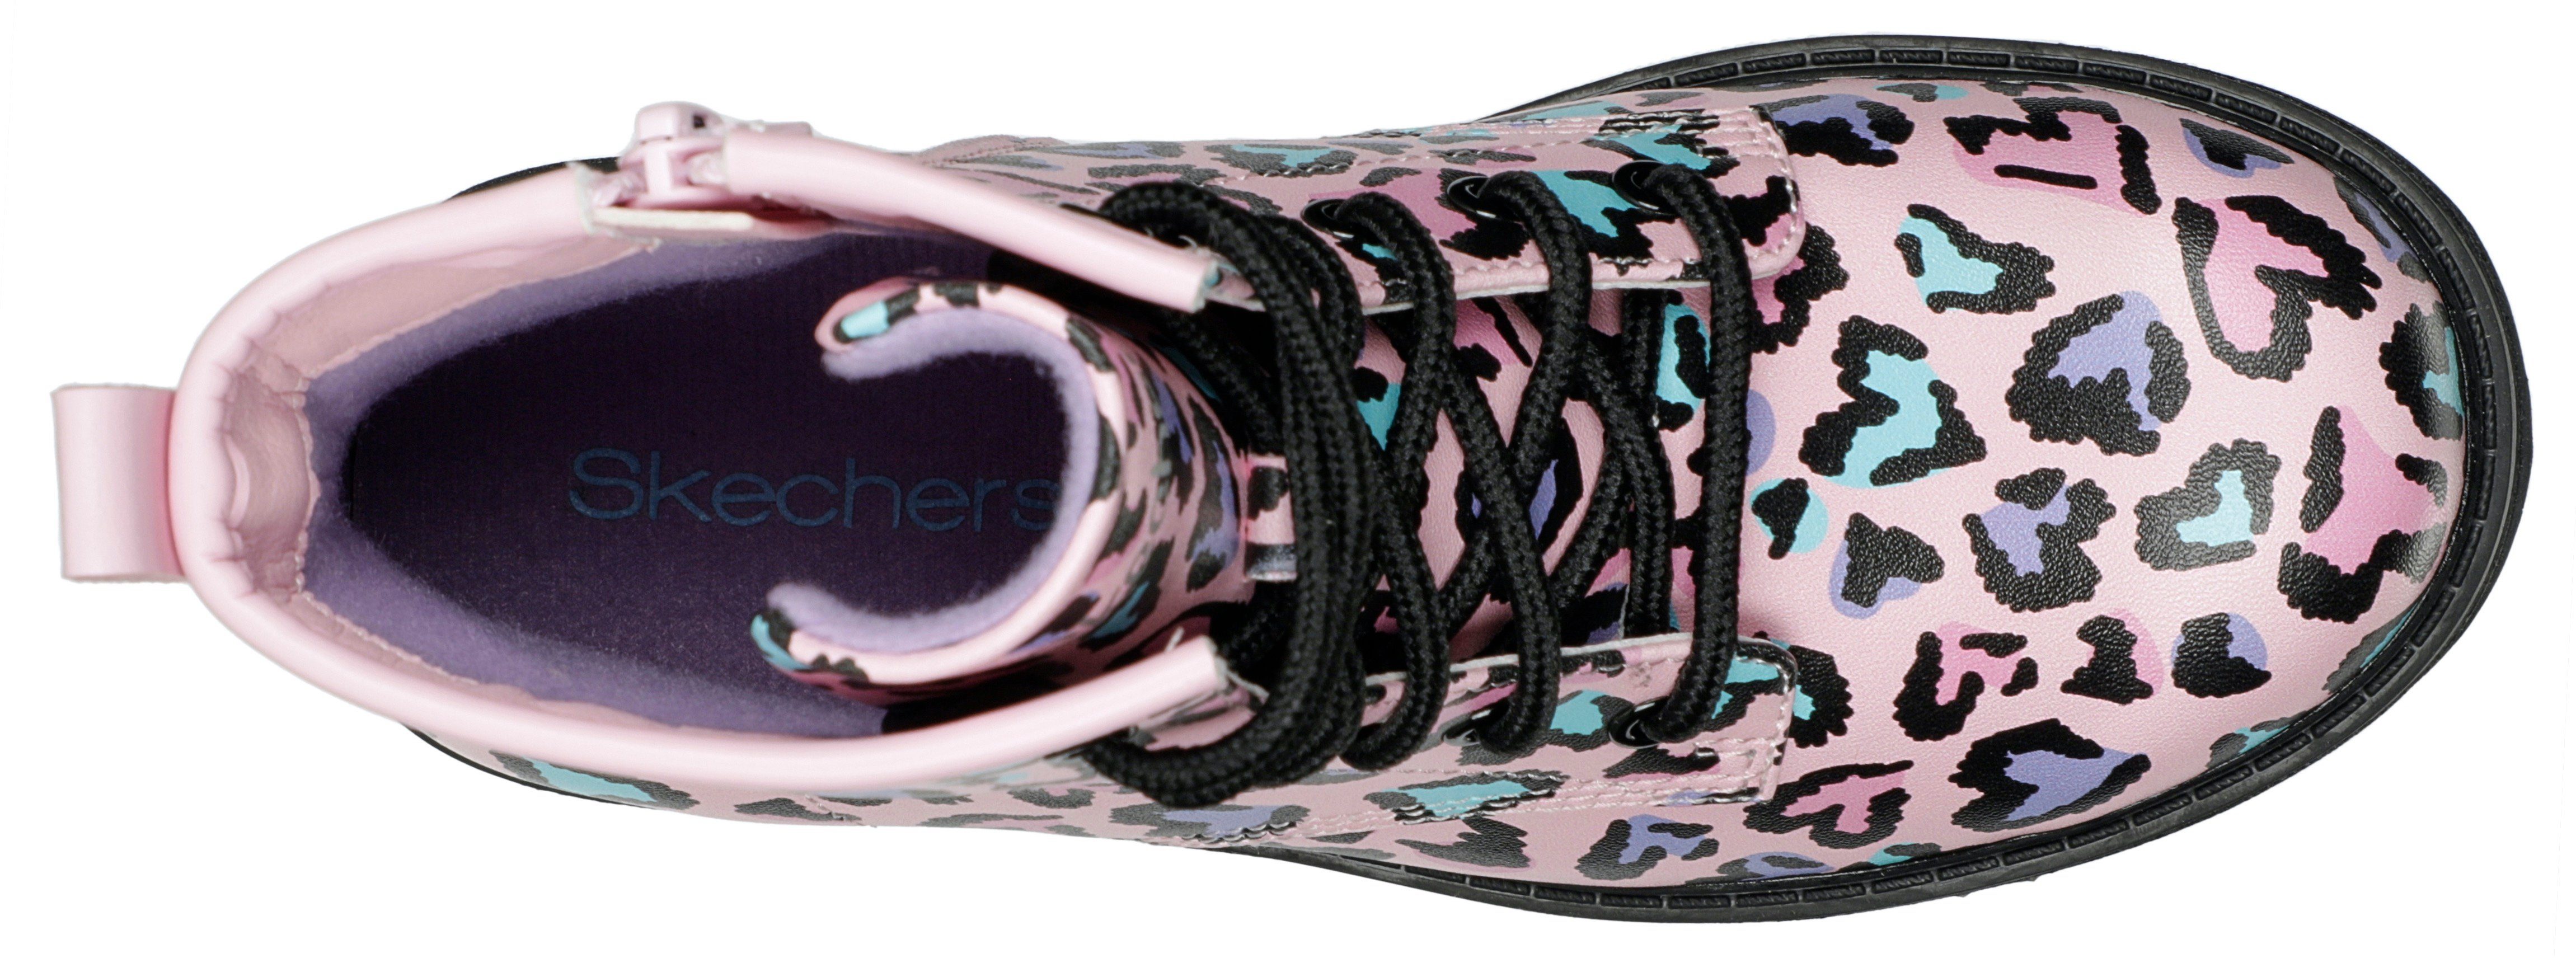 Skechers Kids GRAVLEN Schnürstiefel pink-kombiniert - Reißverschluss TOTALLY WILD mit